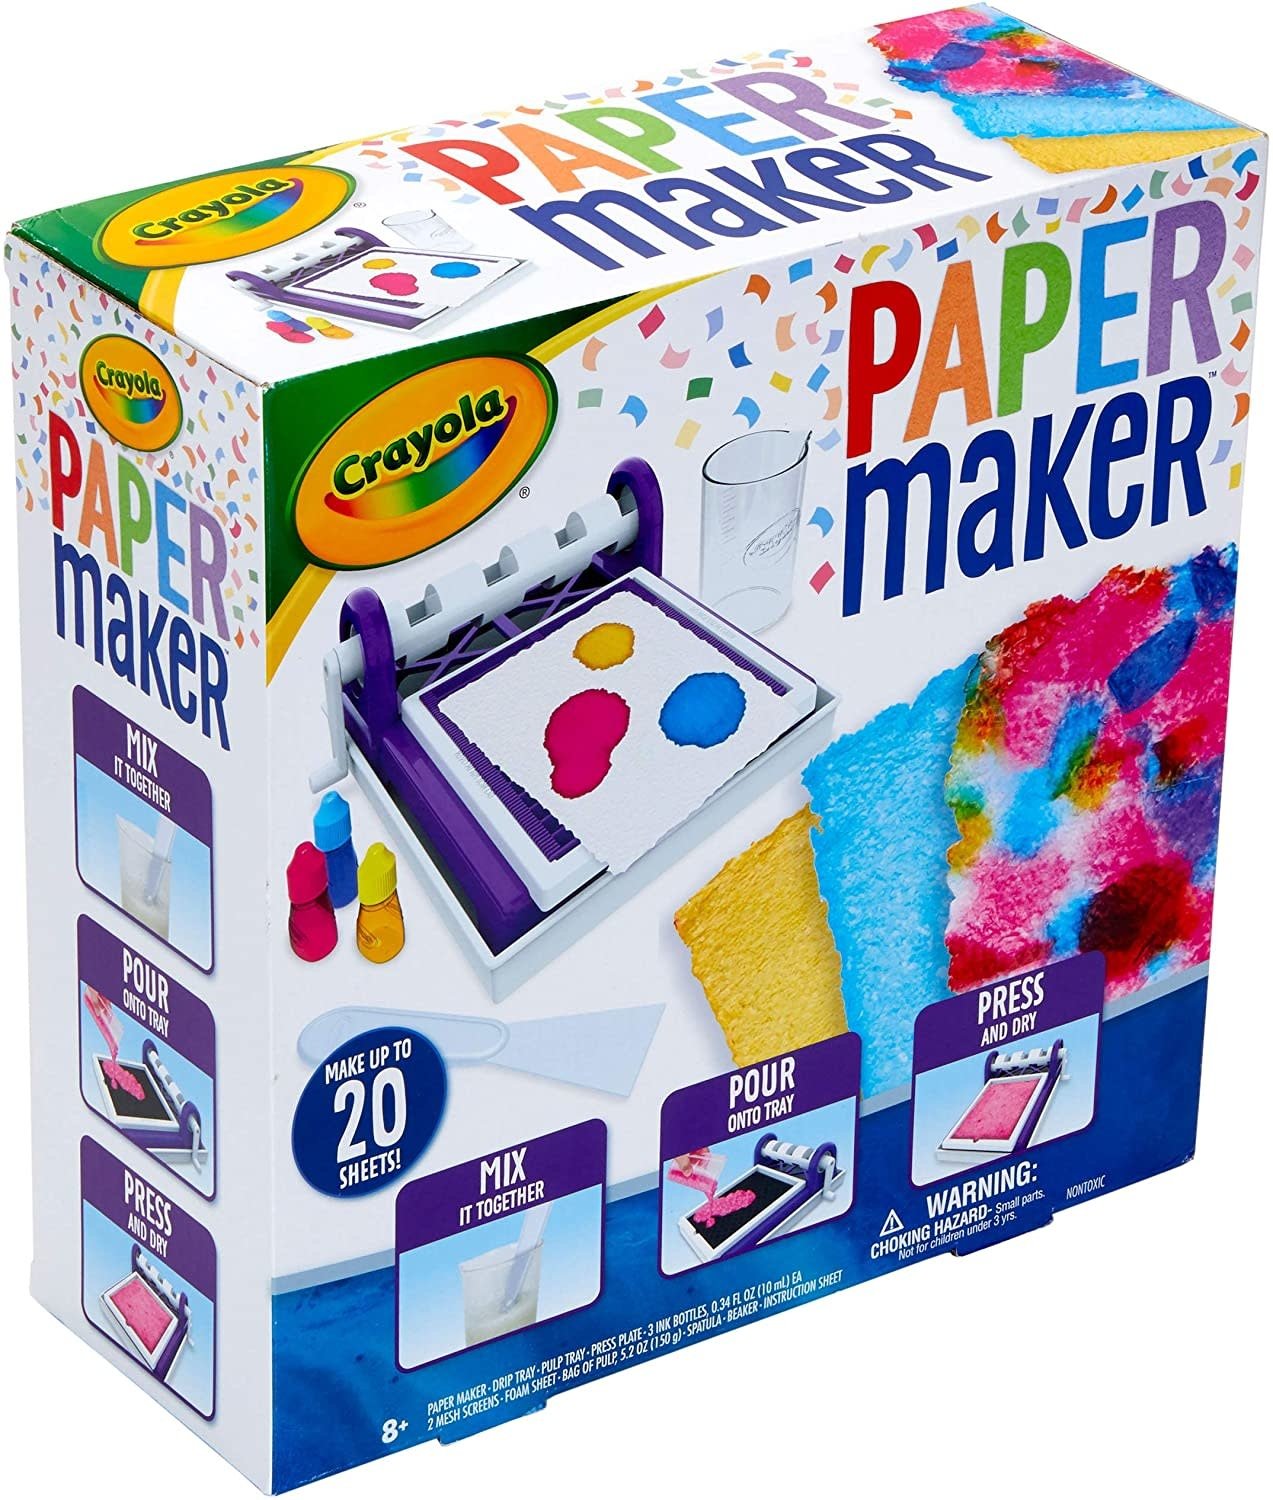 Crayola Crayola Paper Maker